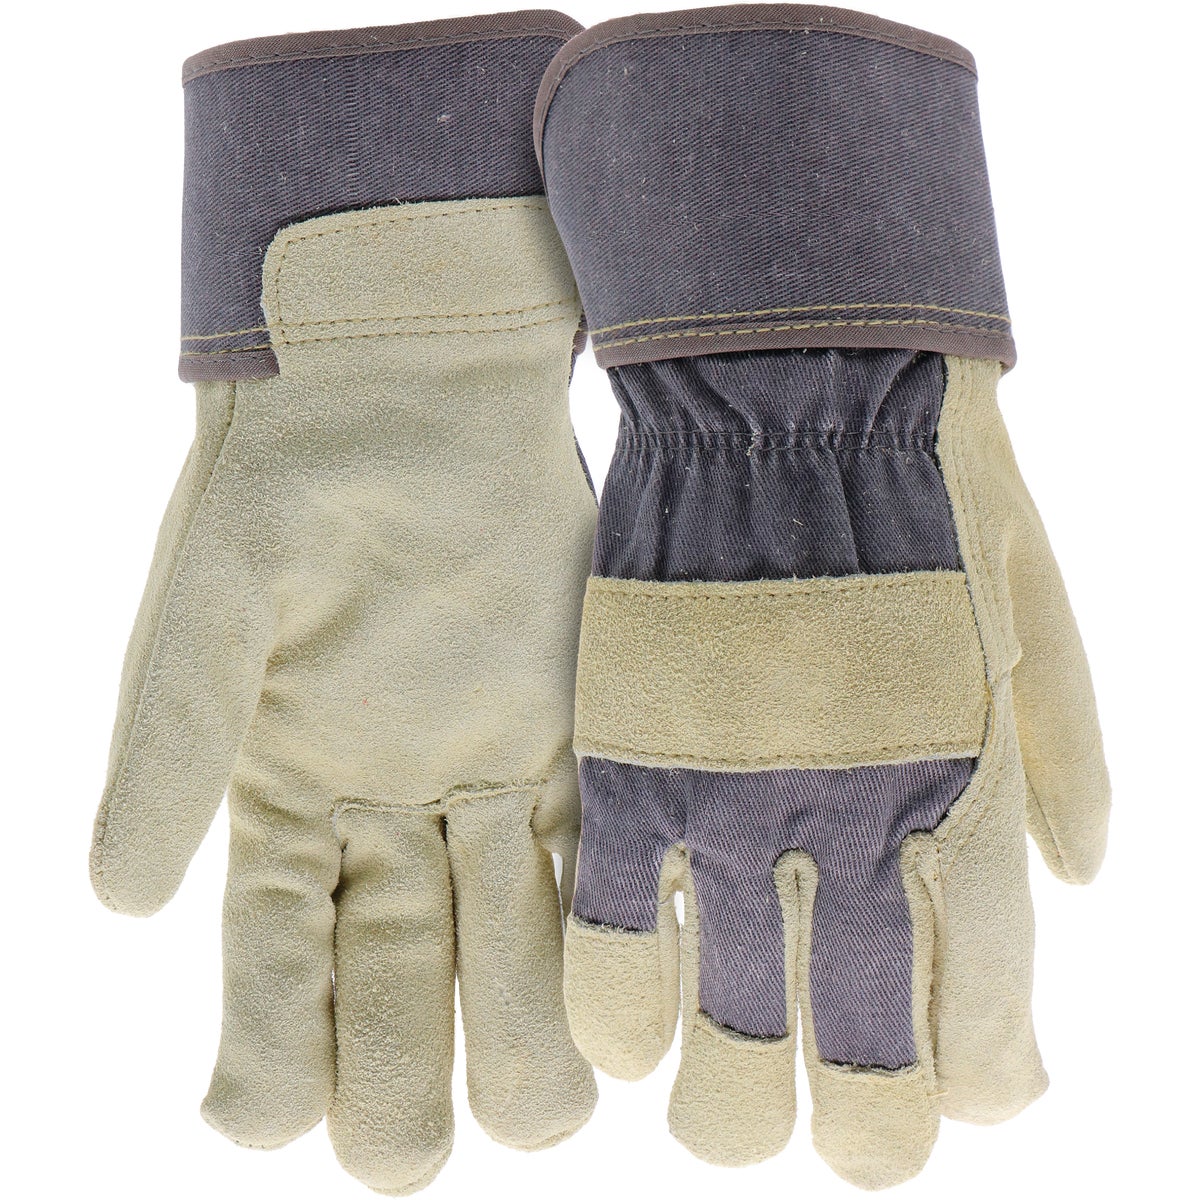 Item 713619, Ladies split cowhide leather palm work glove.